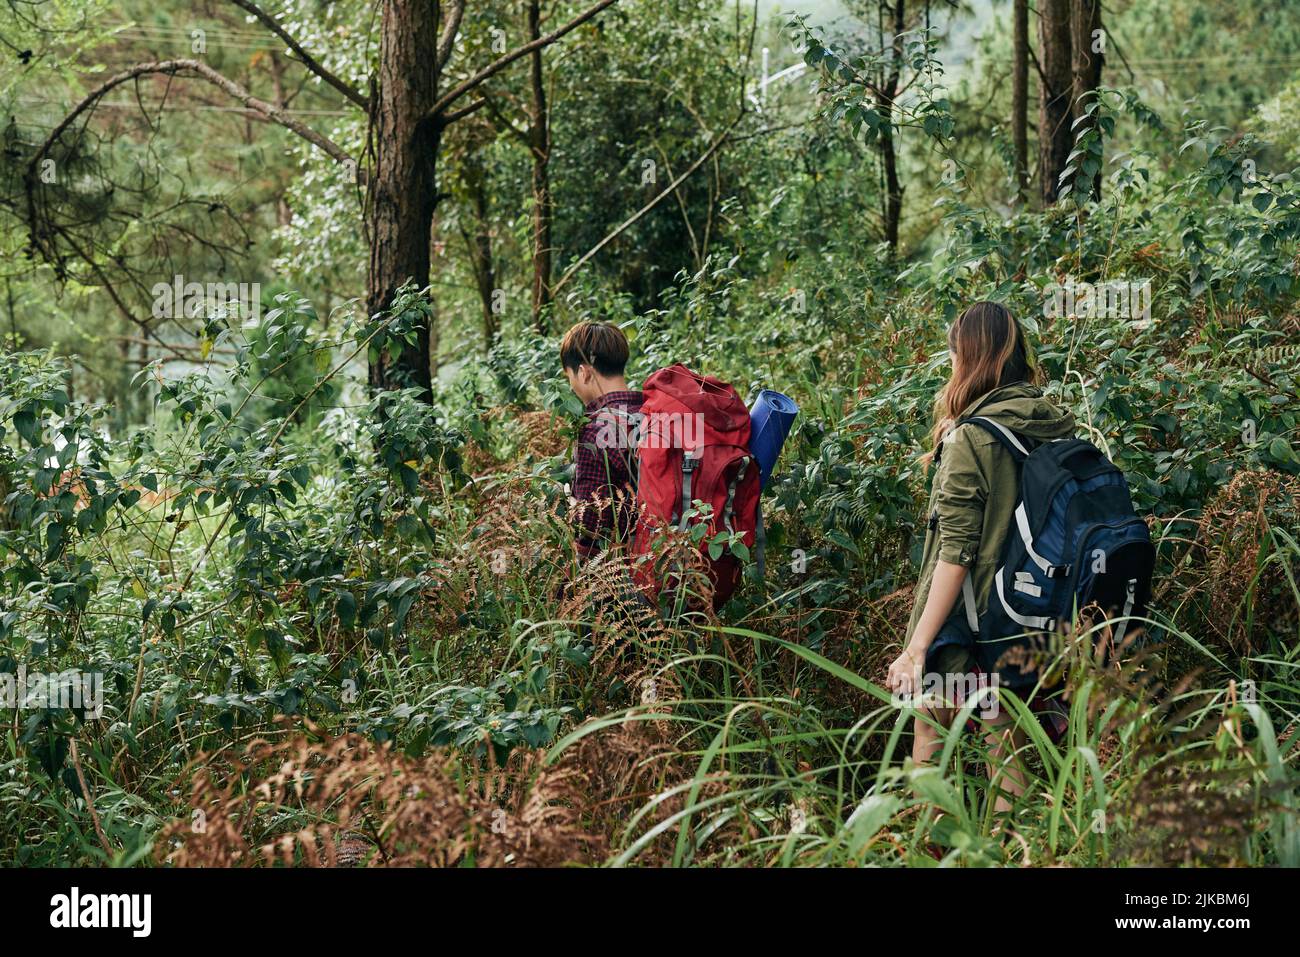 Junge Menschen mit riesigen Rucksäcken wandern gemeinsam im Wald Stockfoto